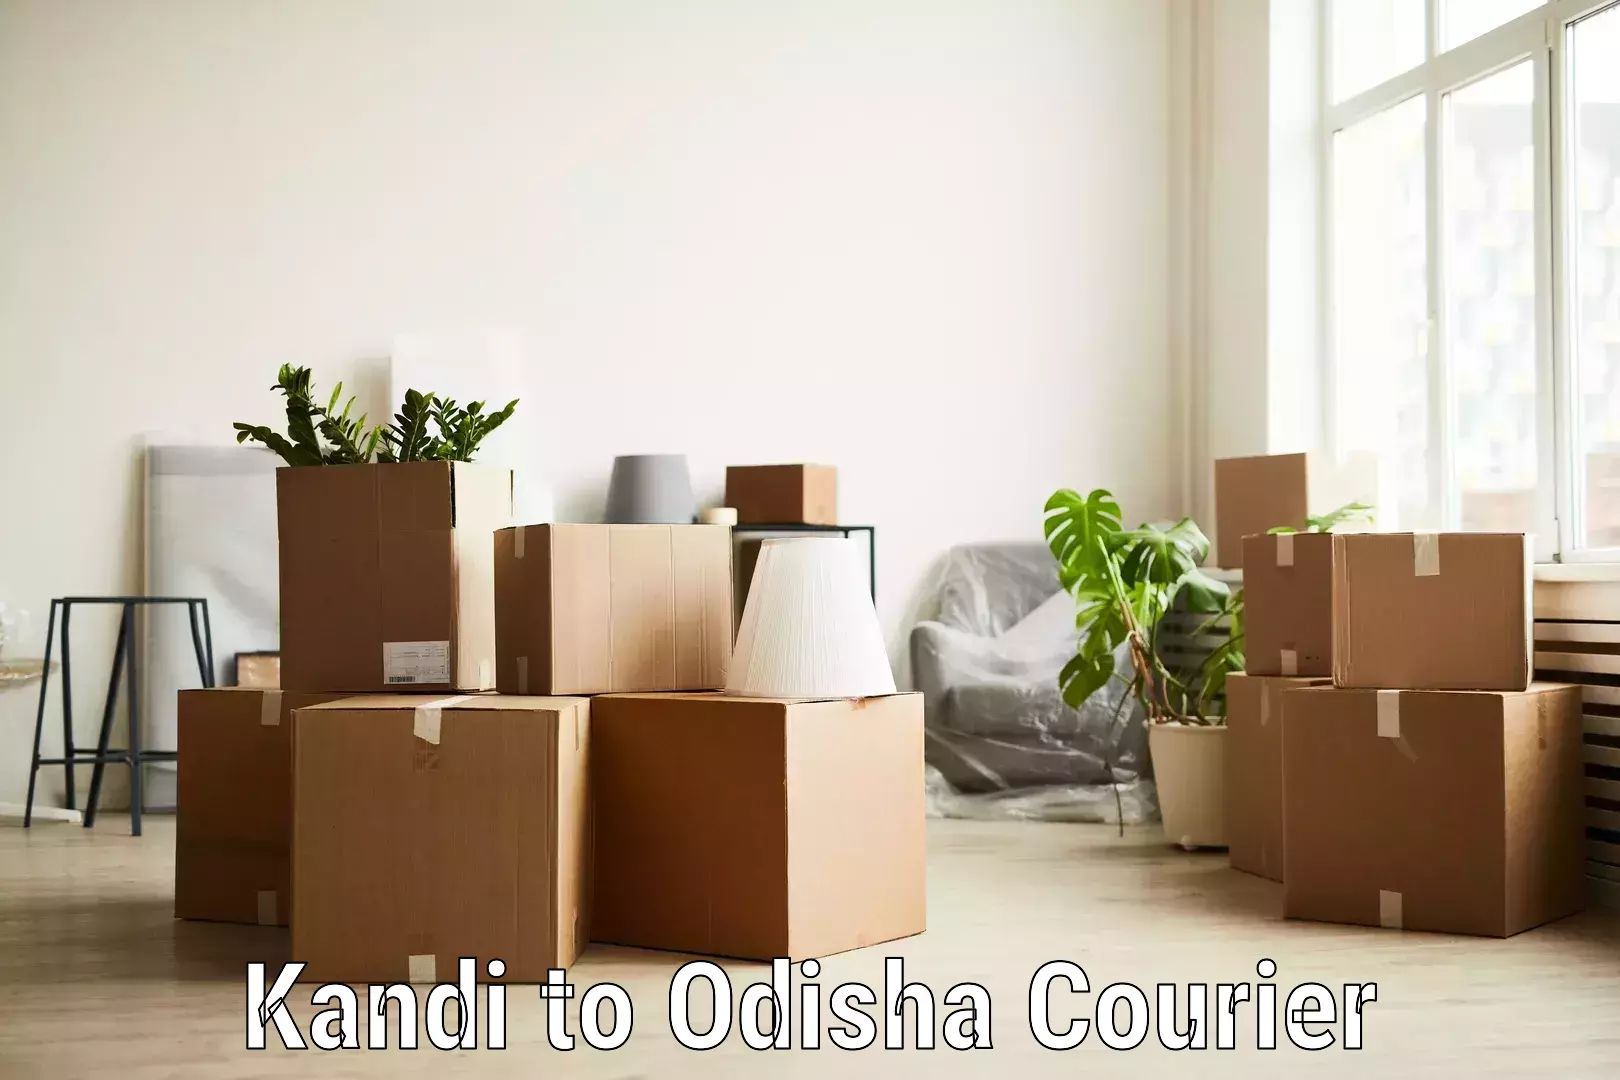 State-of-the-art courier technology Kandi to Odisha